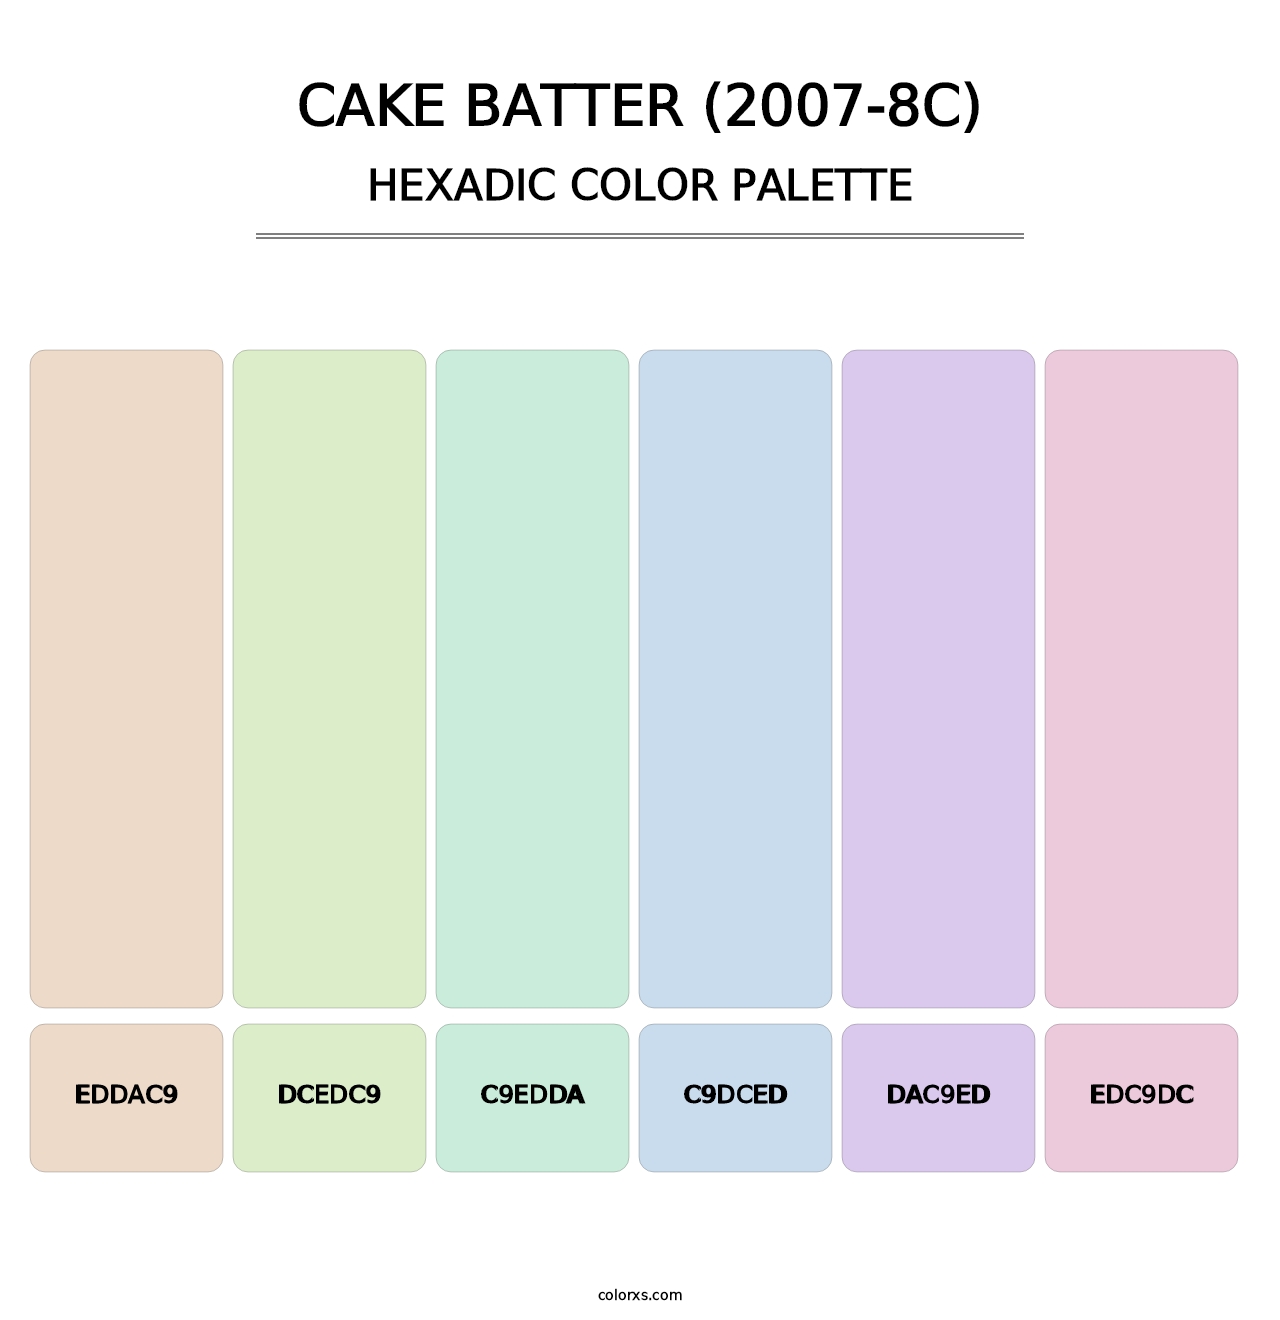 Cake Batter (2007-8C) - Hexadic Color Palette